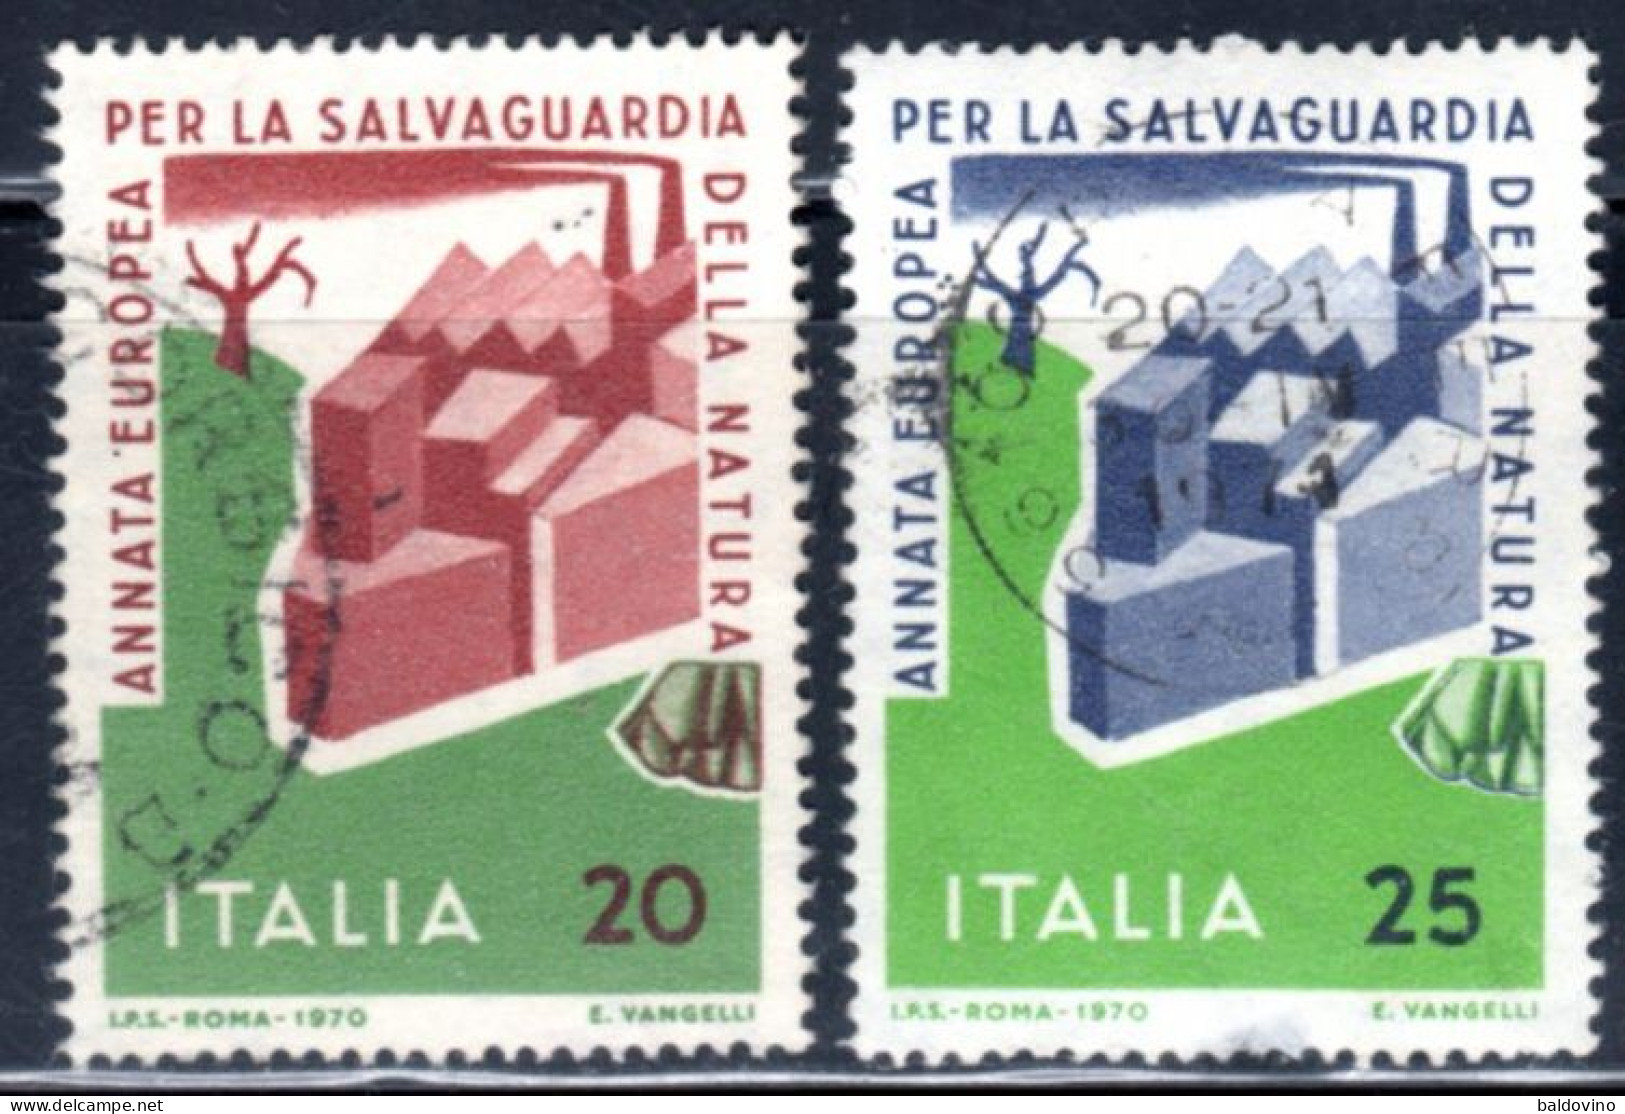 Italia 1970 Lotto 26 valori (vedi descrizione)